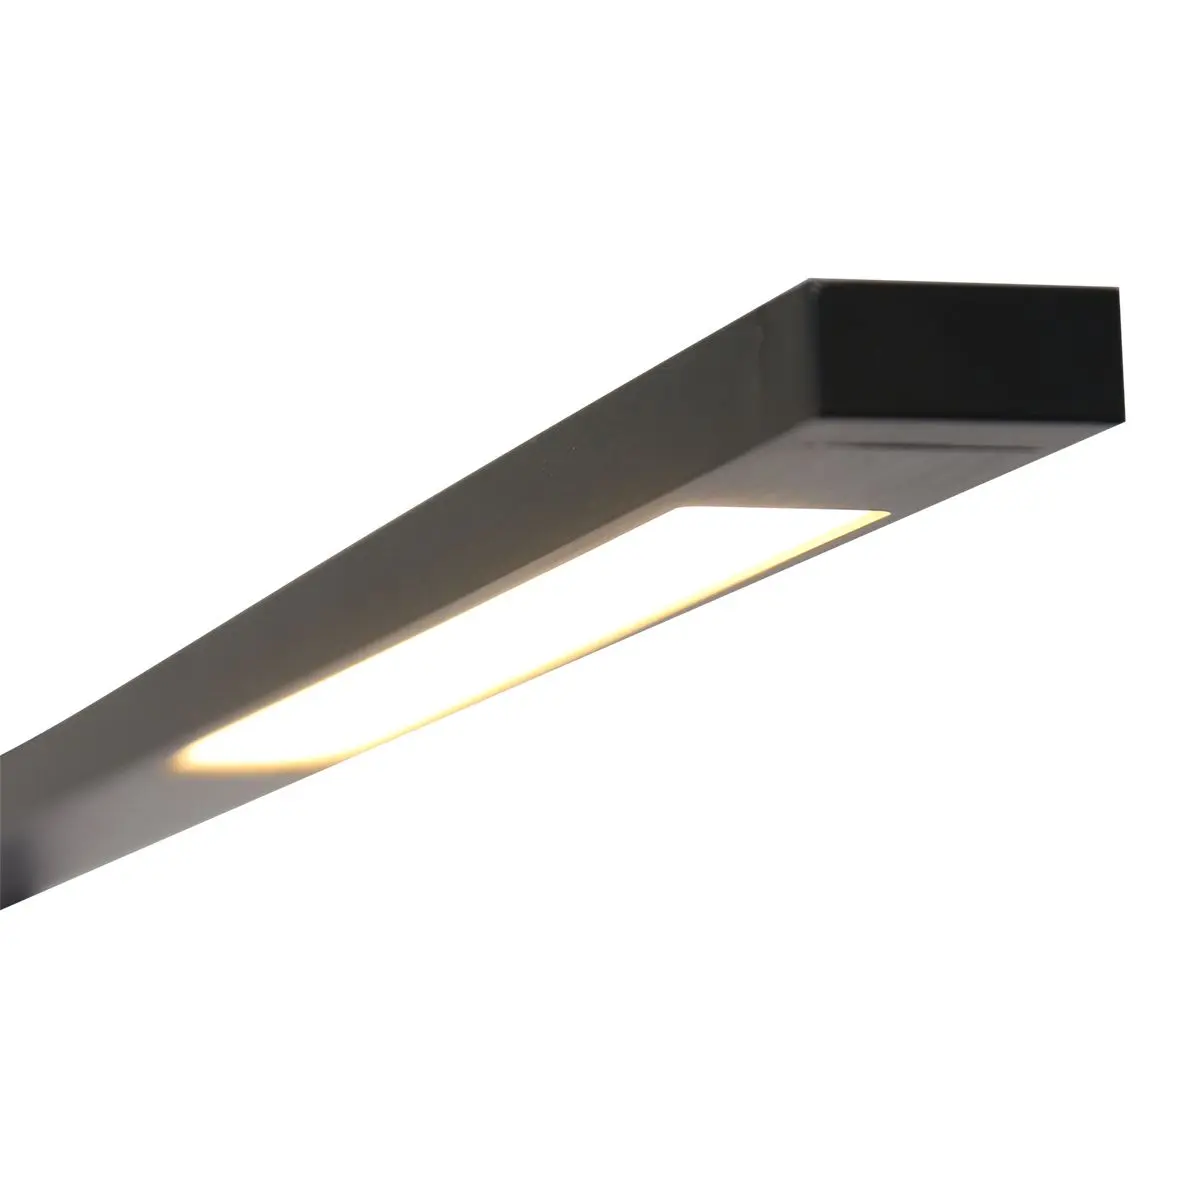 Schwaze LED Stehlampe aus Alu, Effizienz kombiniert mit klarem Design und Funktionalität